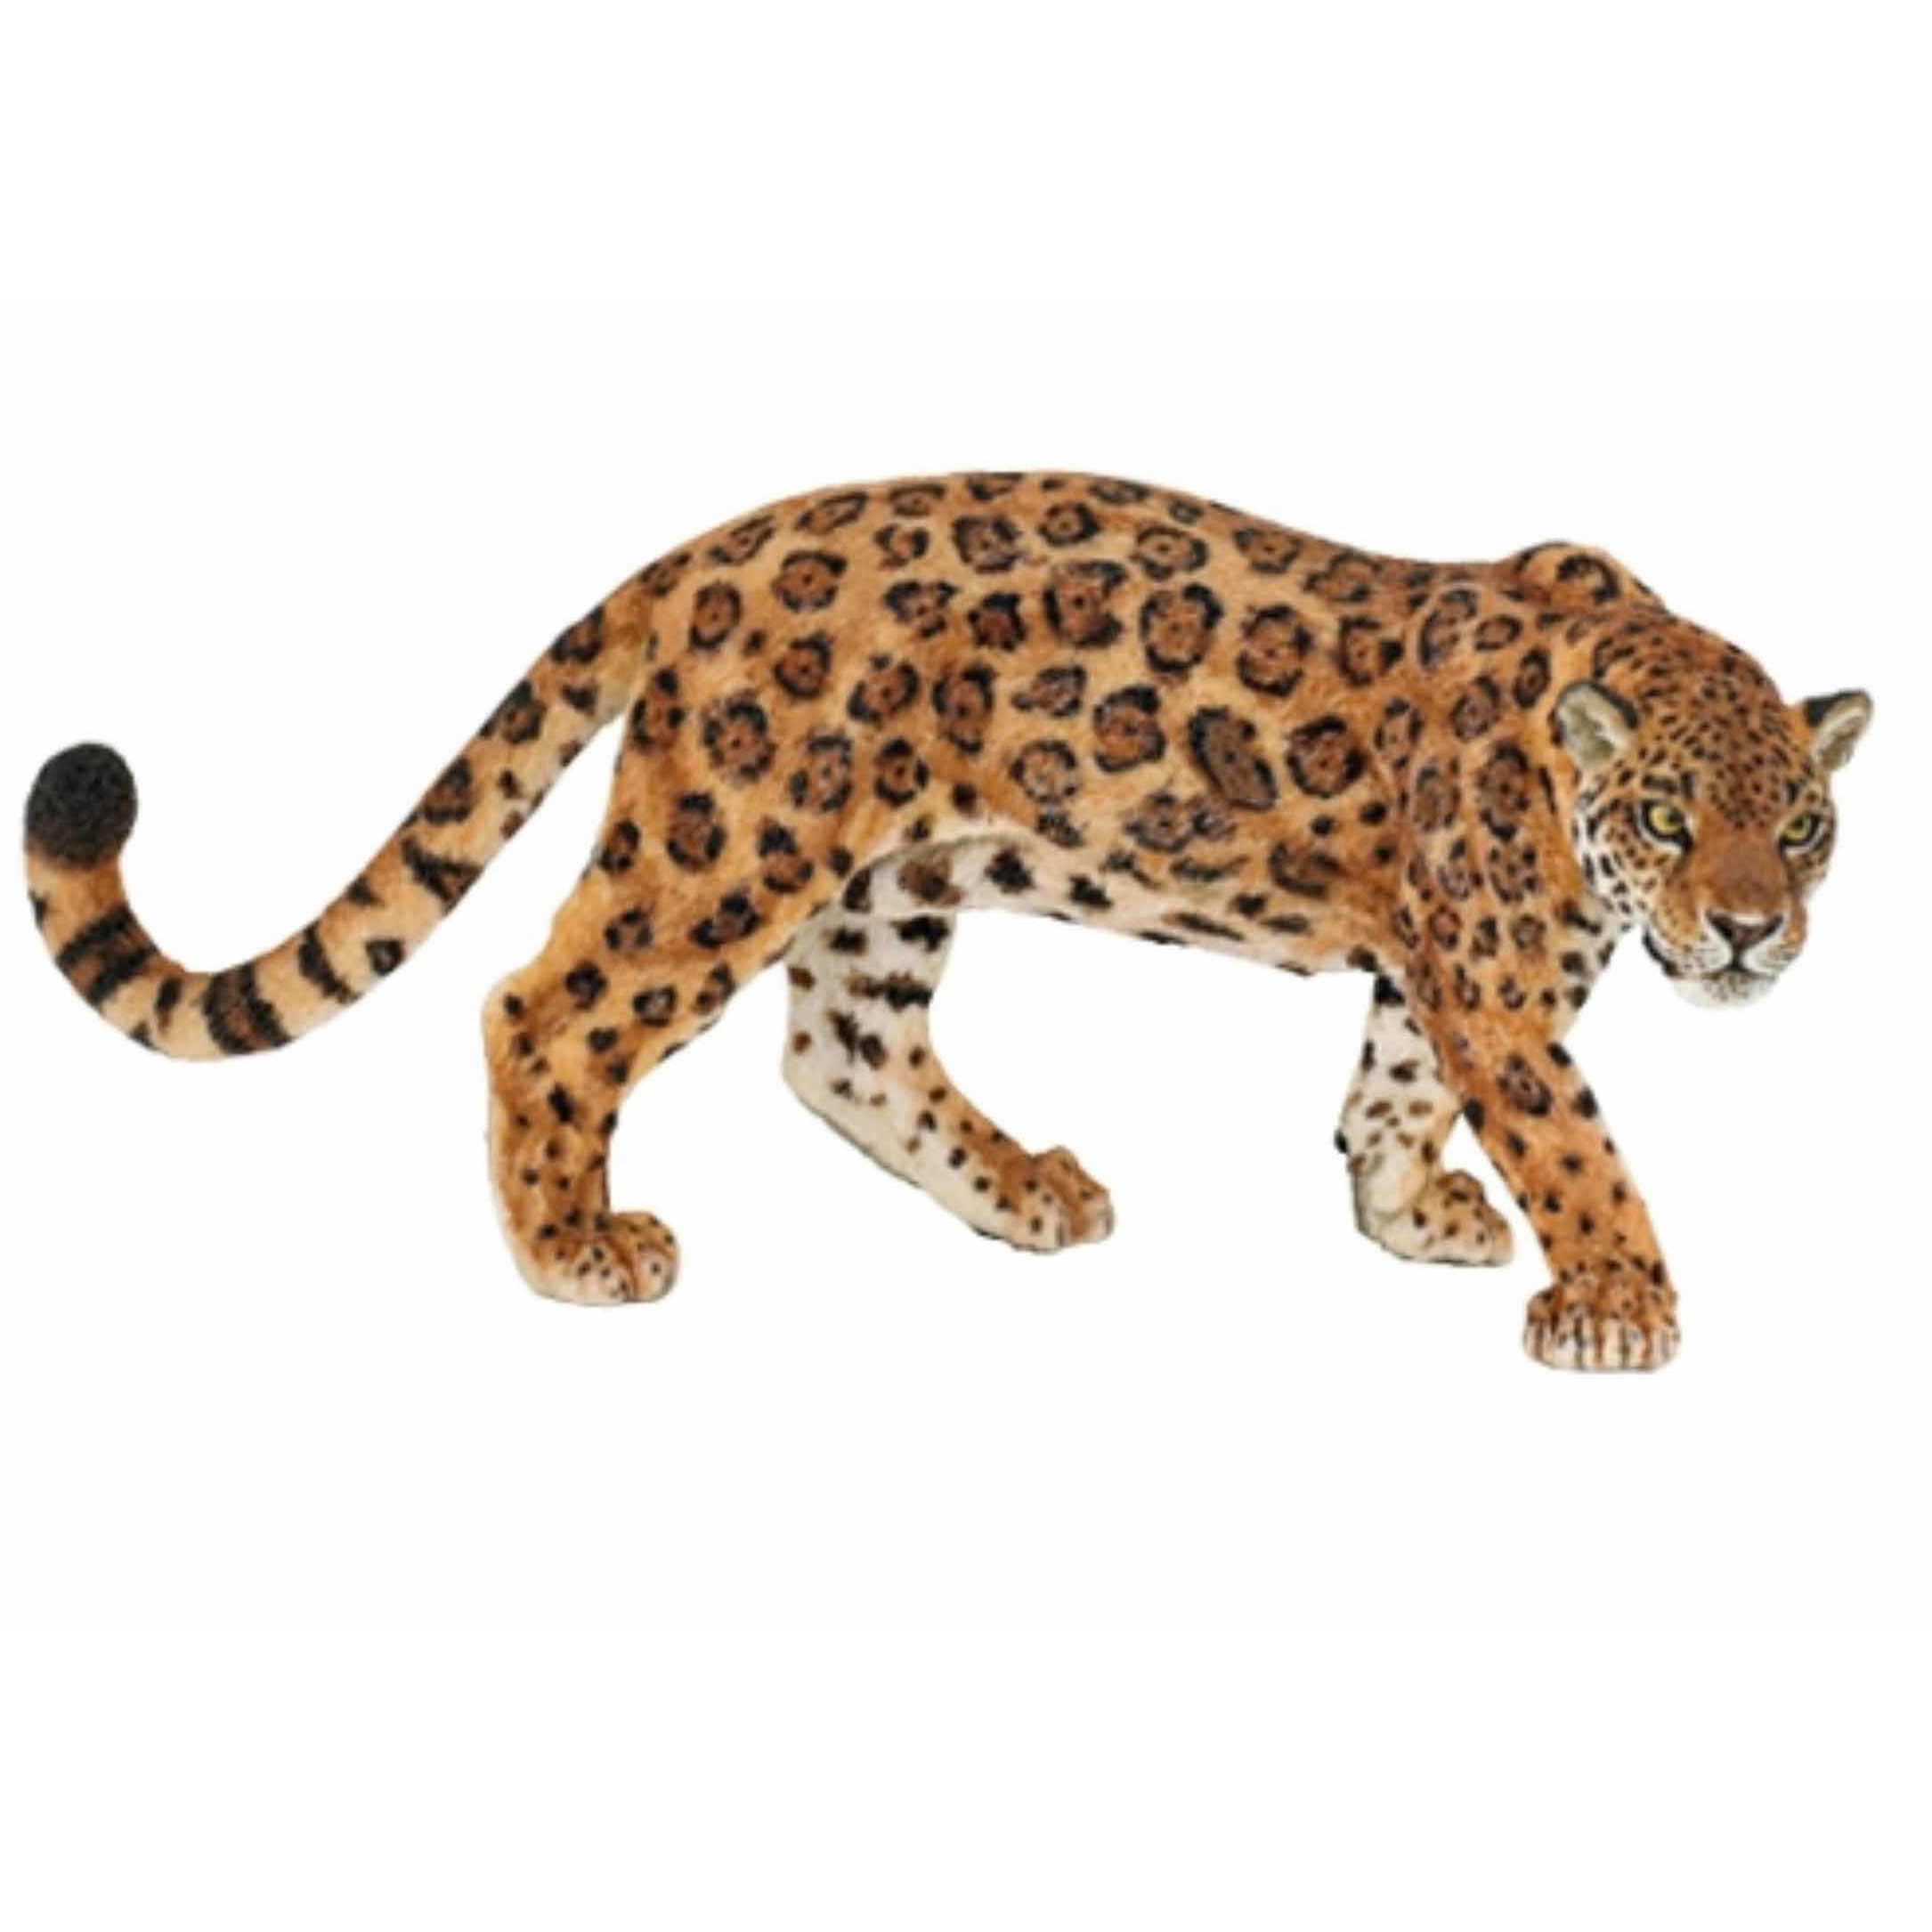 Plastic jaguar speeldiertje 11 cm